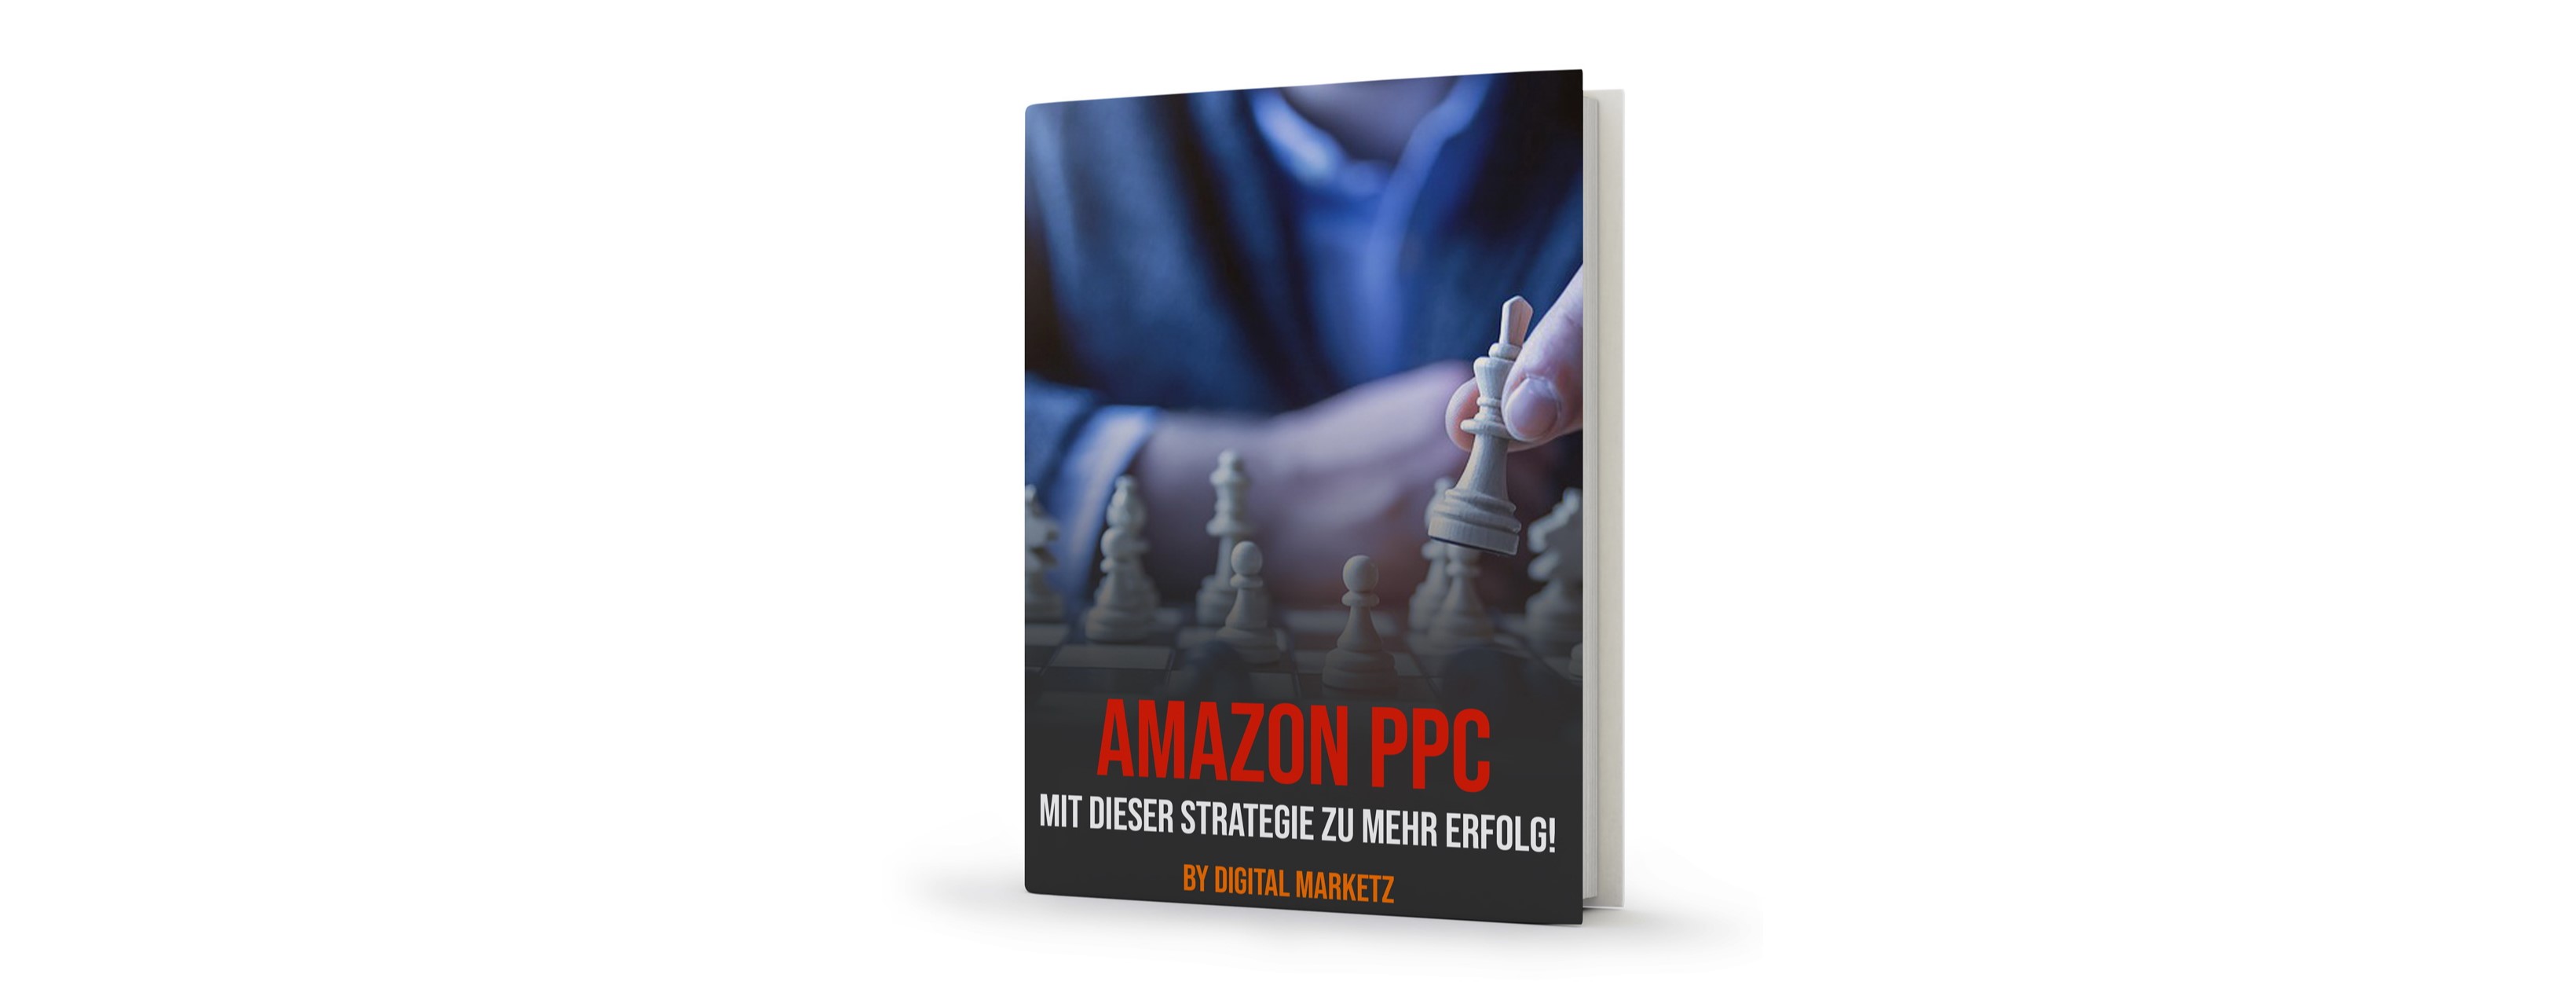 Amazon PPC Strategie - Broschüre: hier bekommst du gratis Tipps für eine PPC Strategie, welche auch wirklich funktioniert.